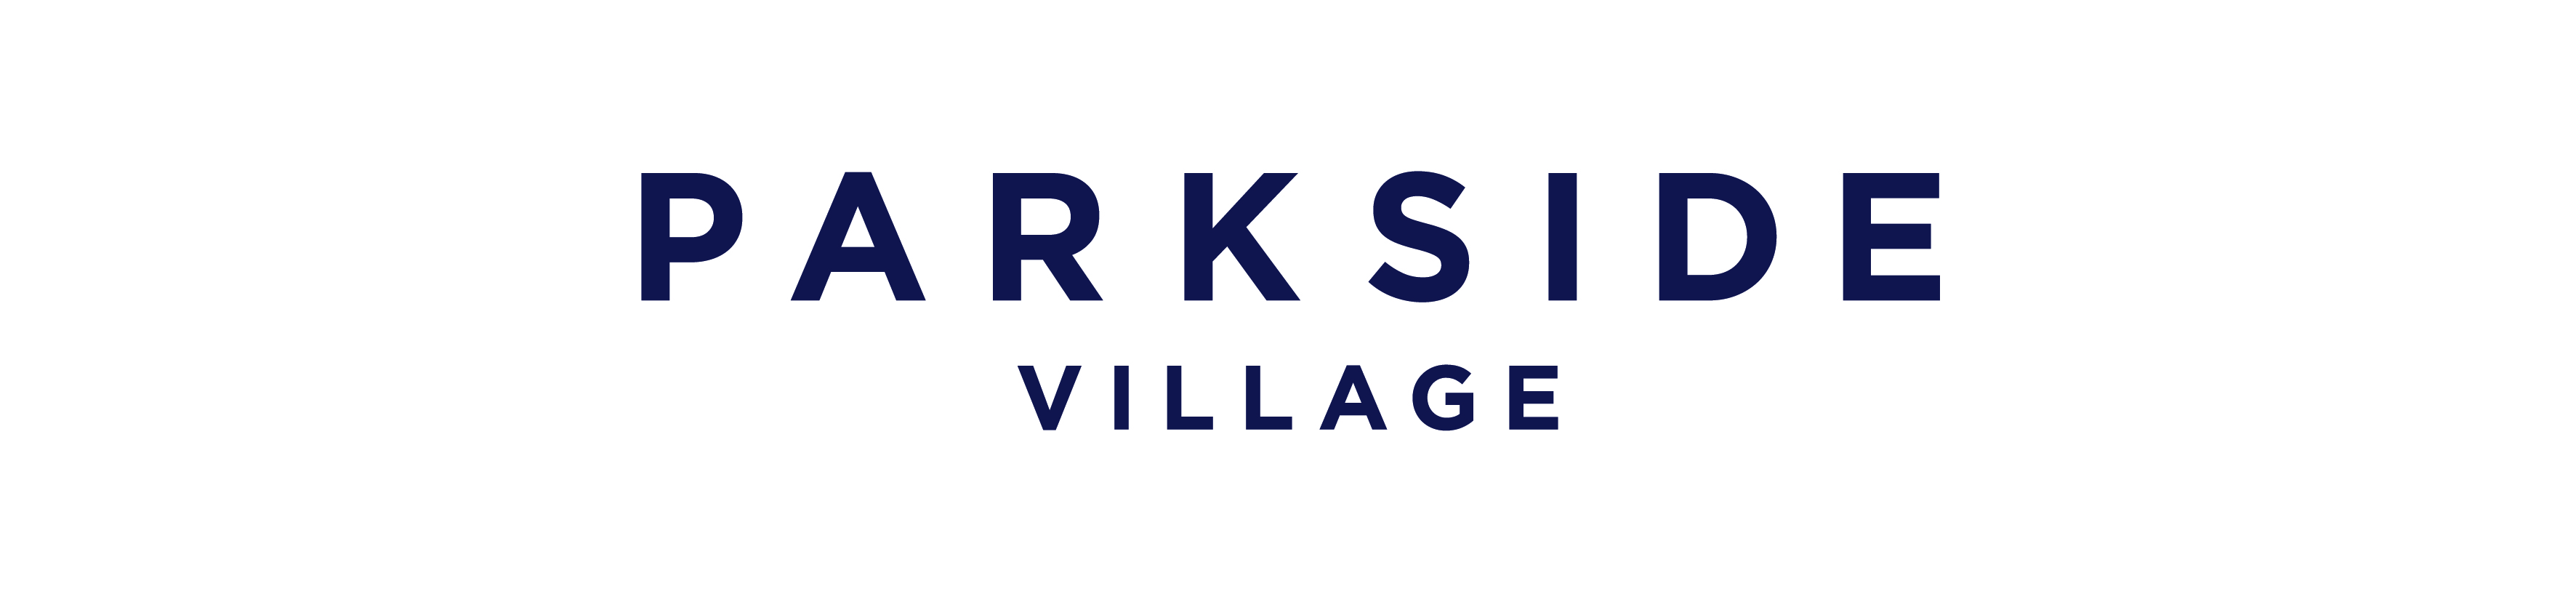 Parkside Village logo